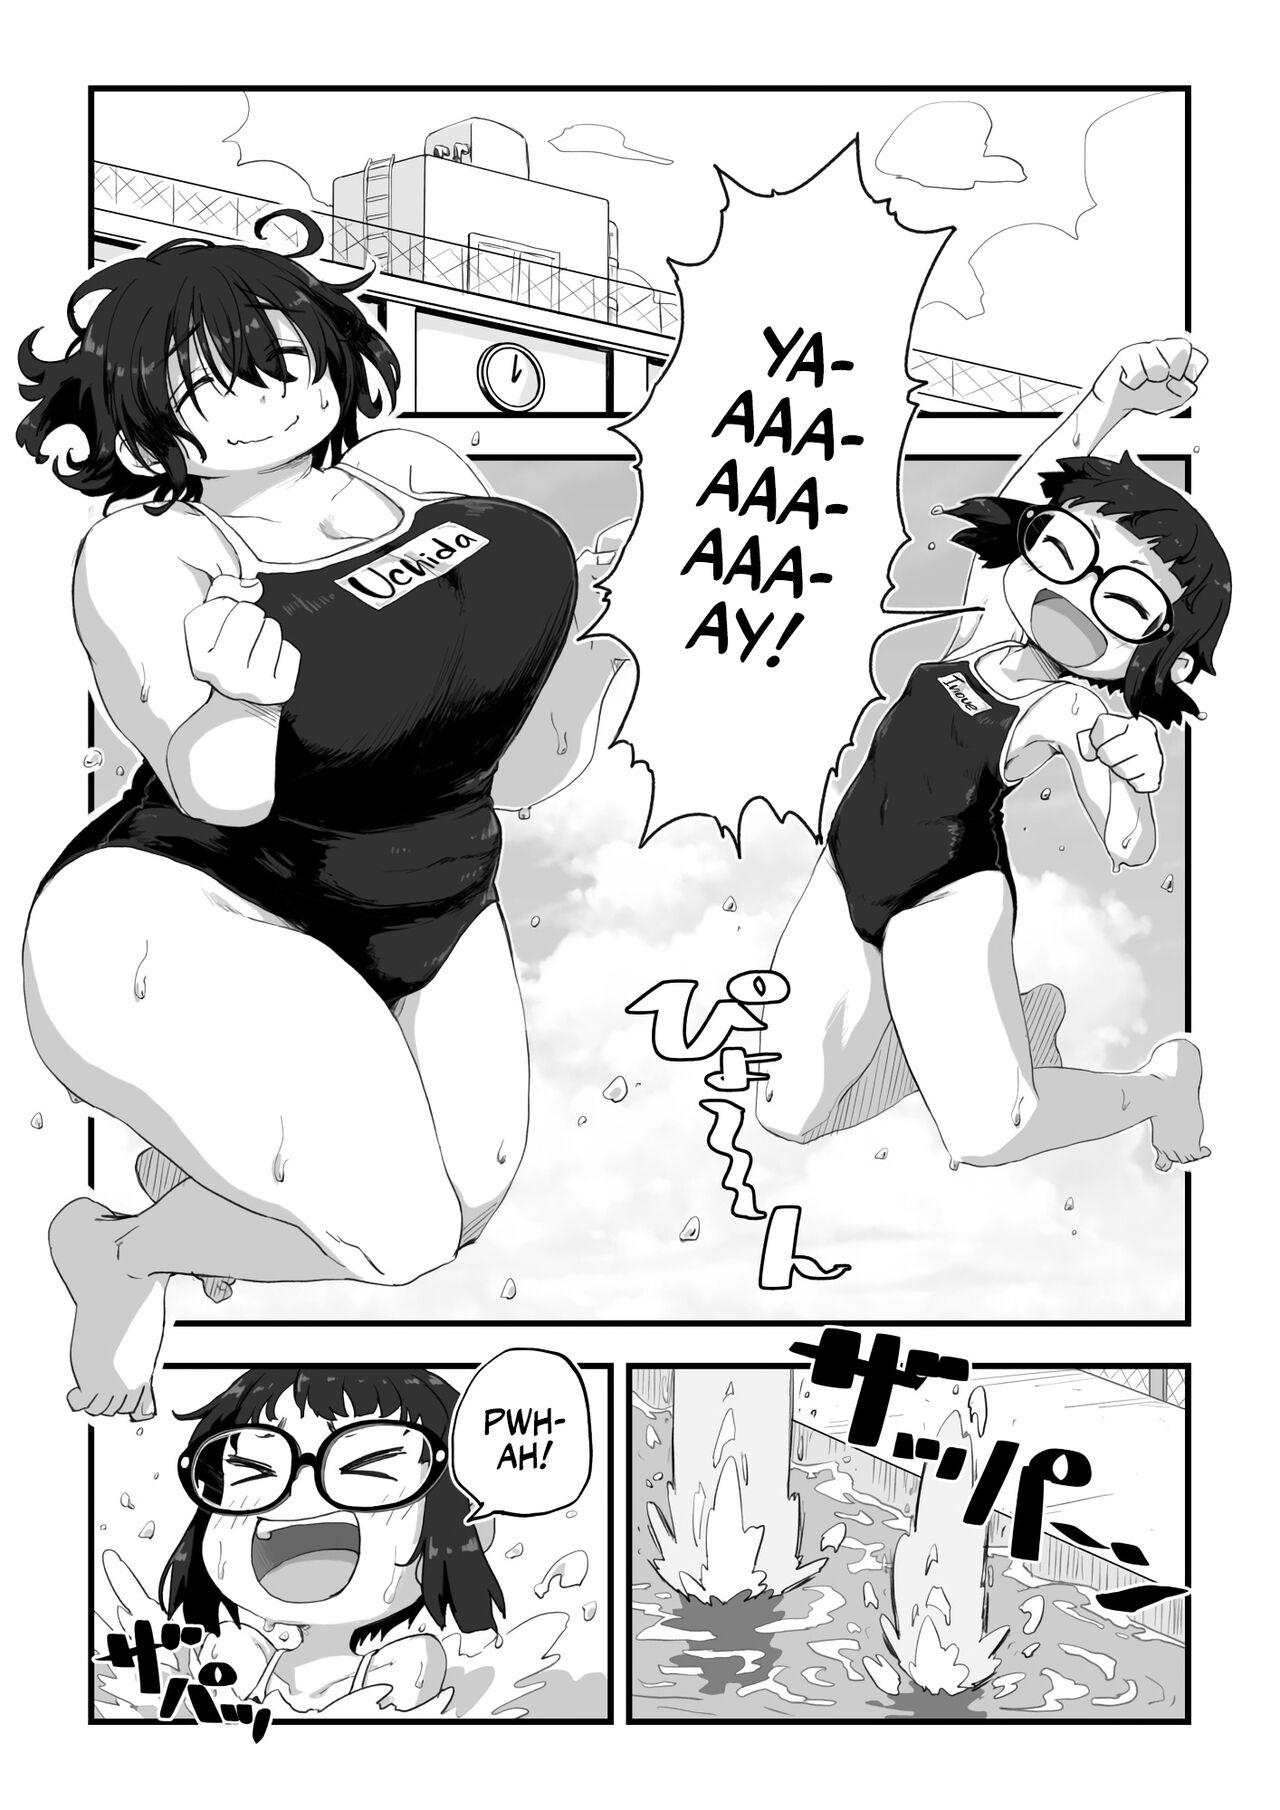 Penis Boku wa Manken Senzoku Nude Model 3 1 Wa+ 2 Wa + 3 Wa | I'm the Manga Club's Naked Model 3 Part 1-3 - Original Whatsapp - Page 2